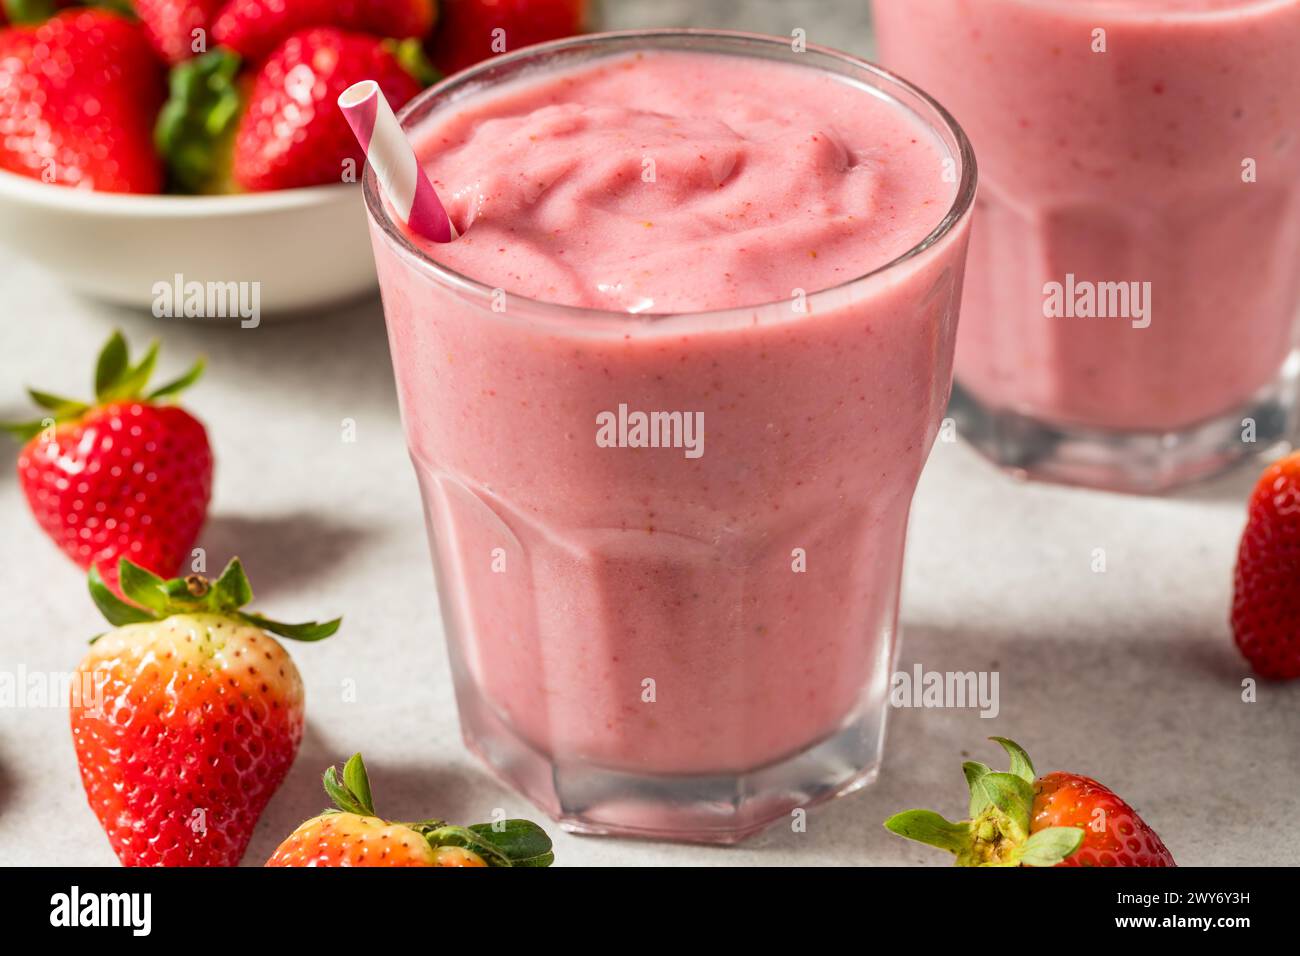 Smoothie de fraise biologique rouge saine avec lait d'amande pour le petit déjeuner Banque D'Images